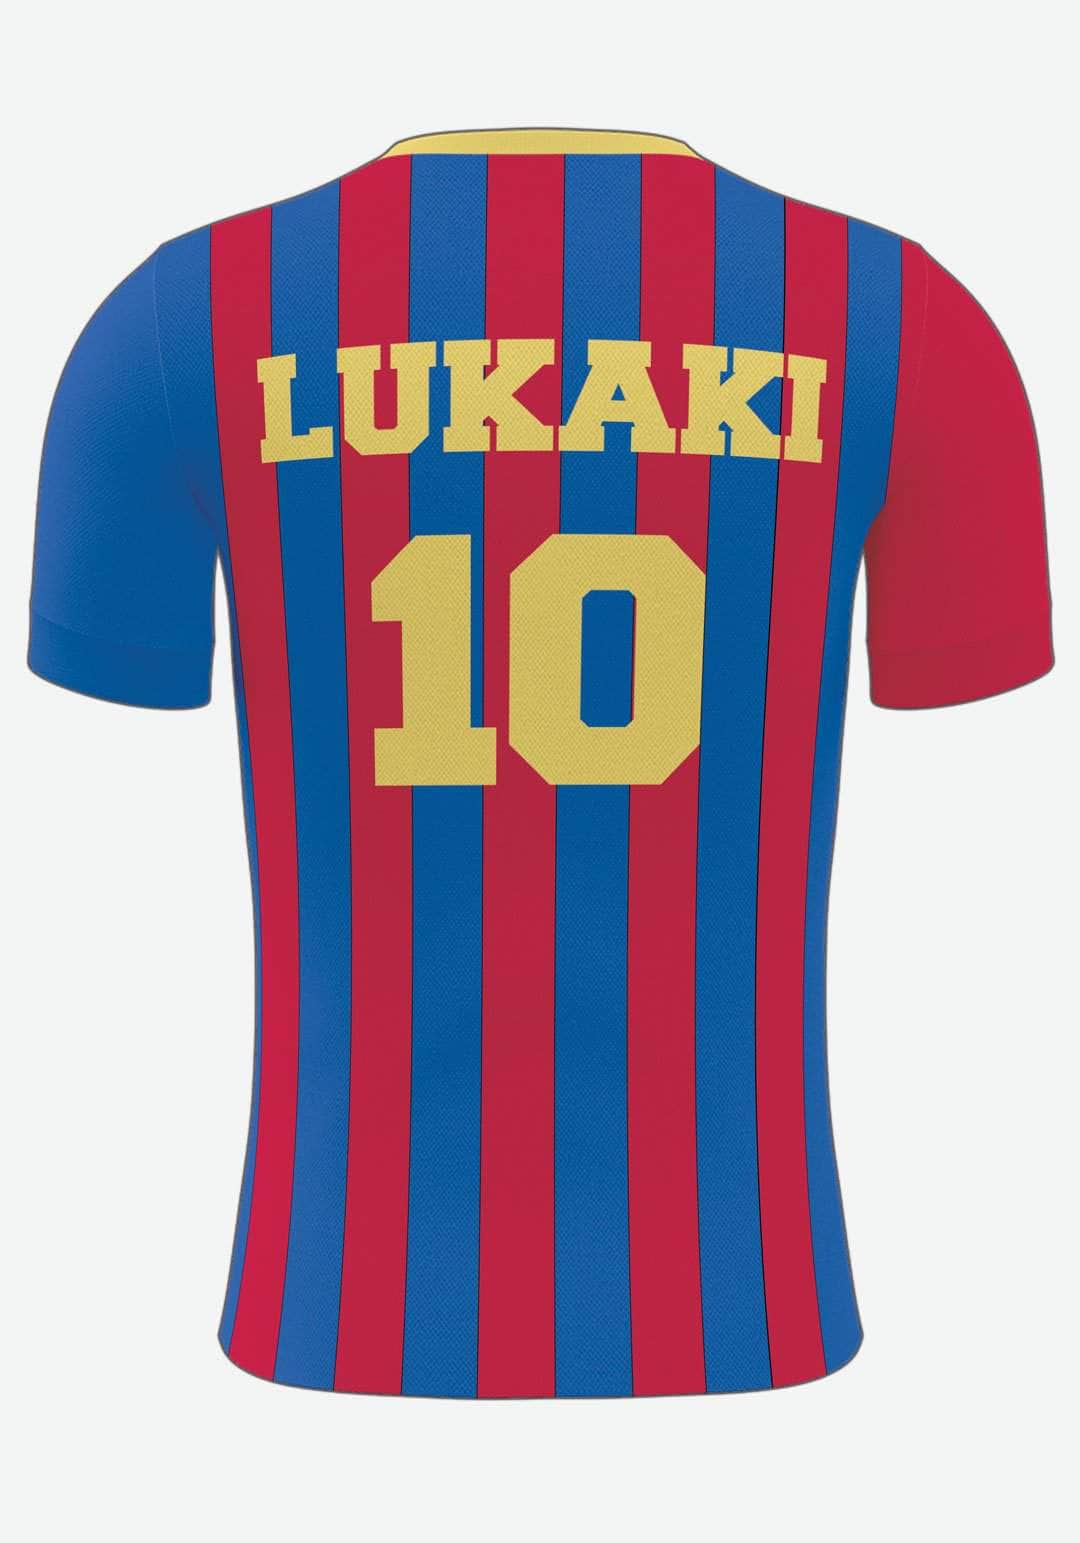 Barcelona Fodbold plakat - med eget navn og nummer